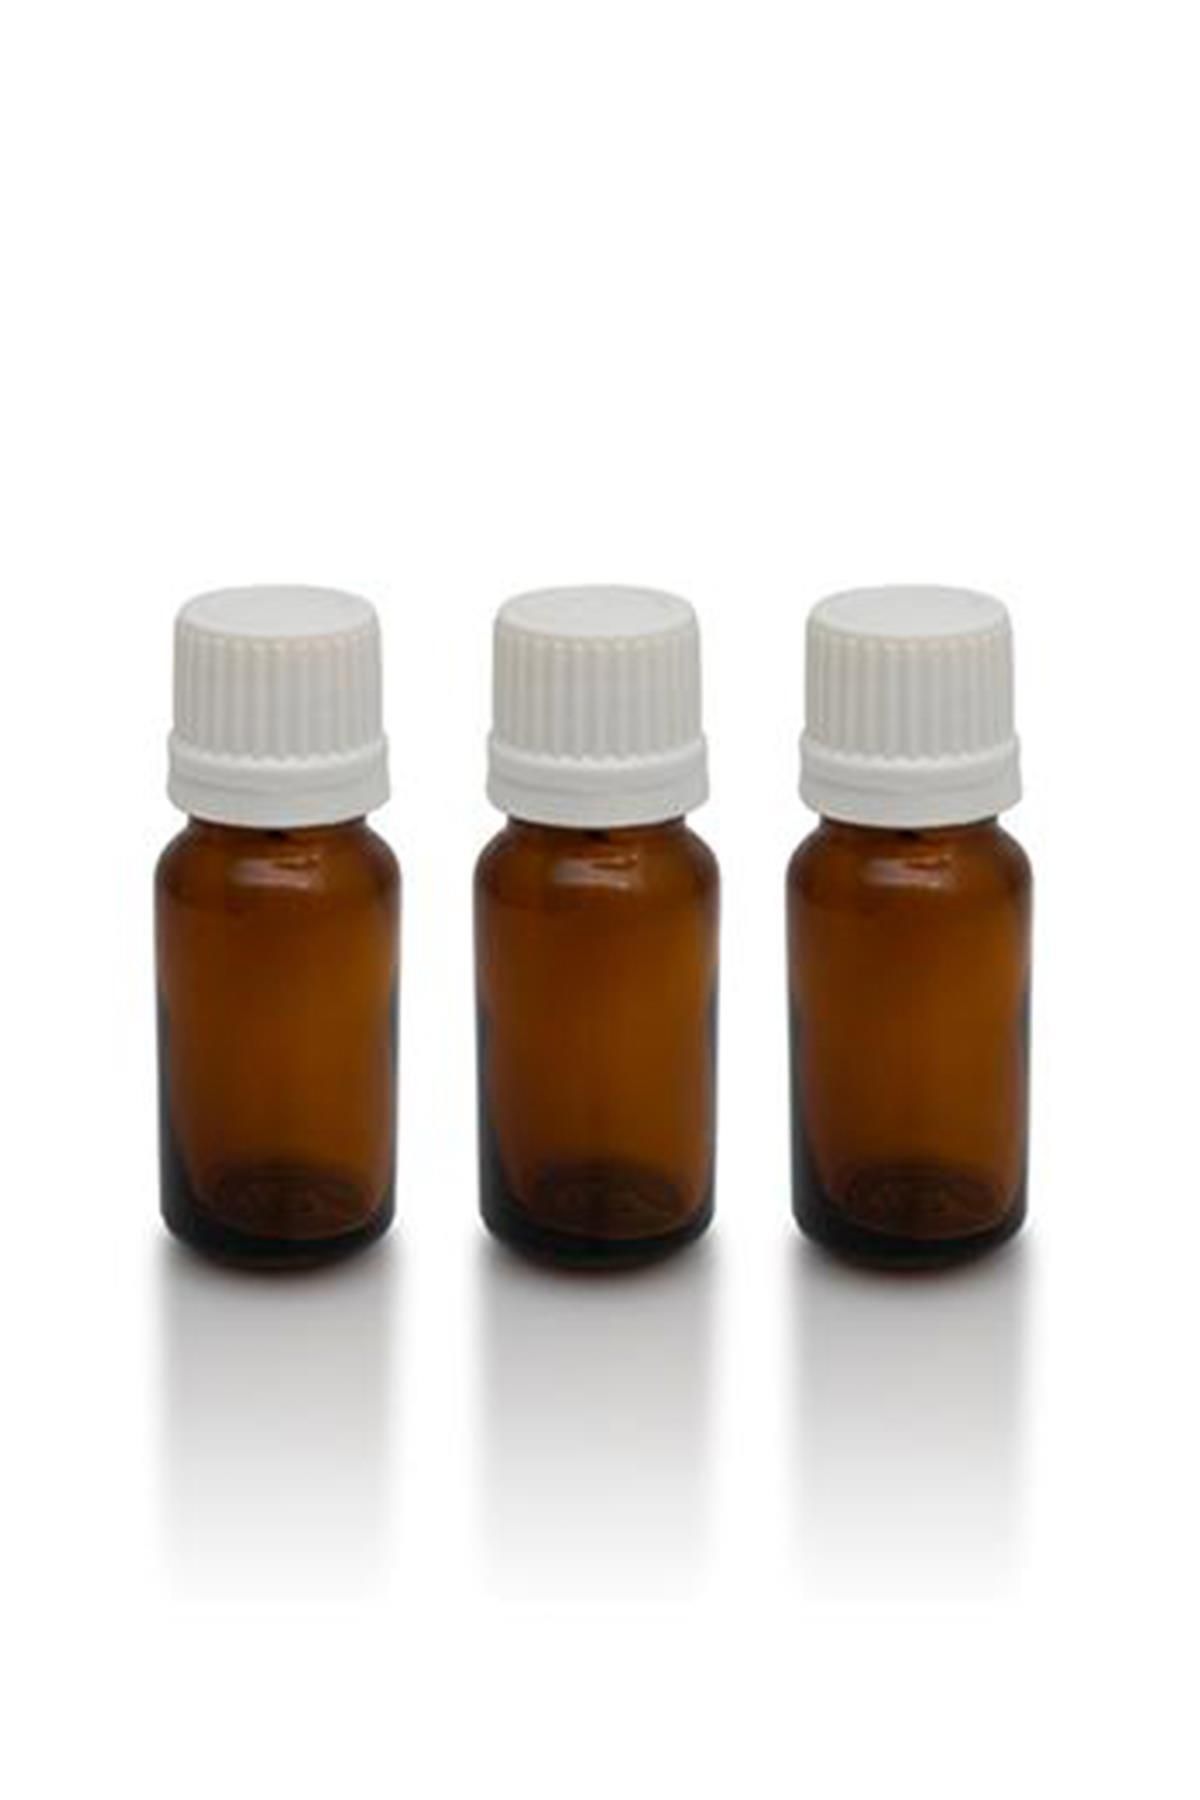 Therapium Naturalis İçten Damlalıklı Cam Şişe Amber 3 Adet - 10ml